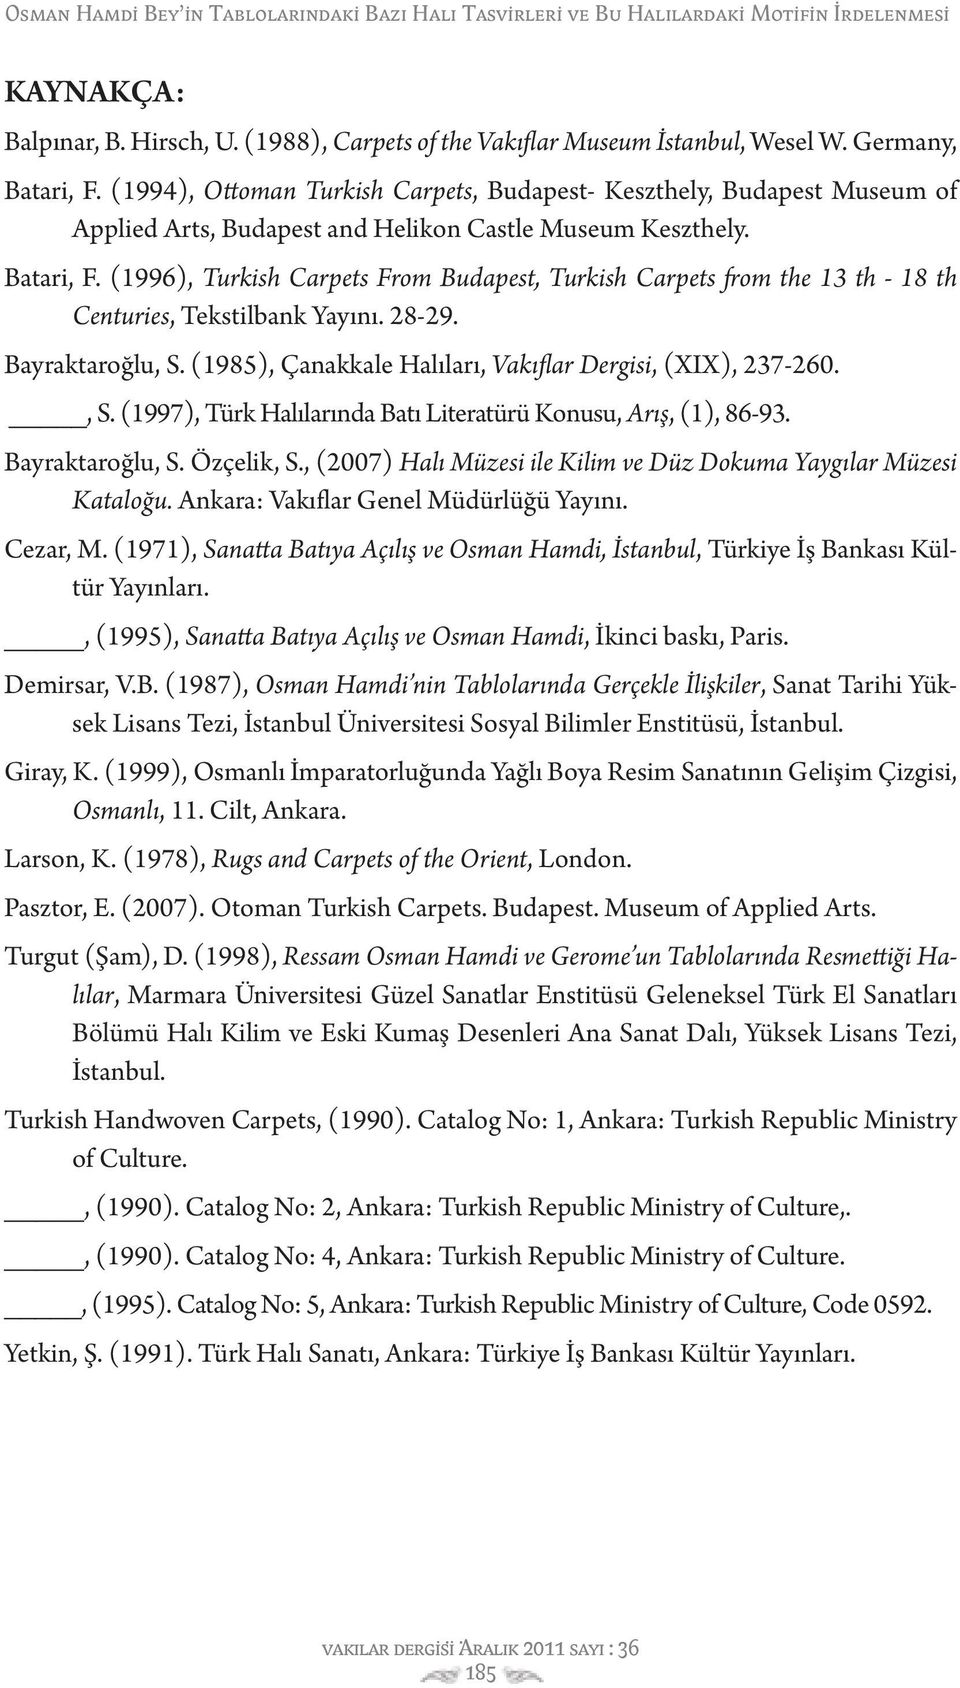 (1996), Turkish Carpets From Budapest, Turkish Carpets from the 13 th - 18 th Centuries, Tekstilbank Yayını. 28-29. Bayraktaroğlu, S. (1985), Çanakkale Halıları, Vakıflar Dergisi, (XIX), 237-260., S. (1997), Türk Halılarında Batı Literatürü Konusu, Arış, (1), 86-93.